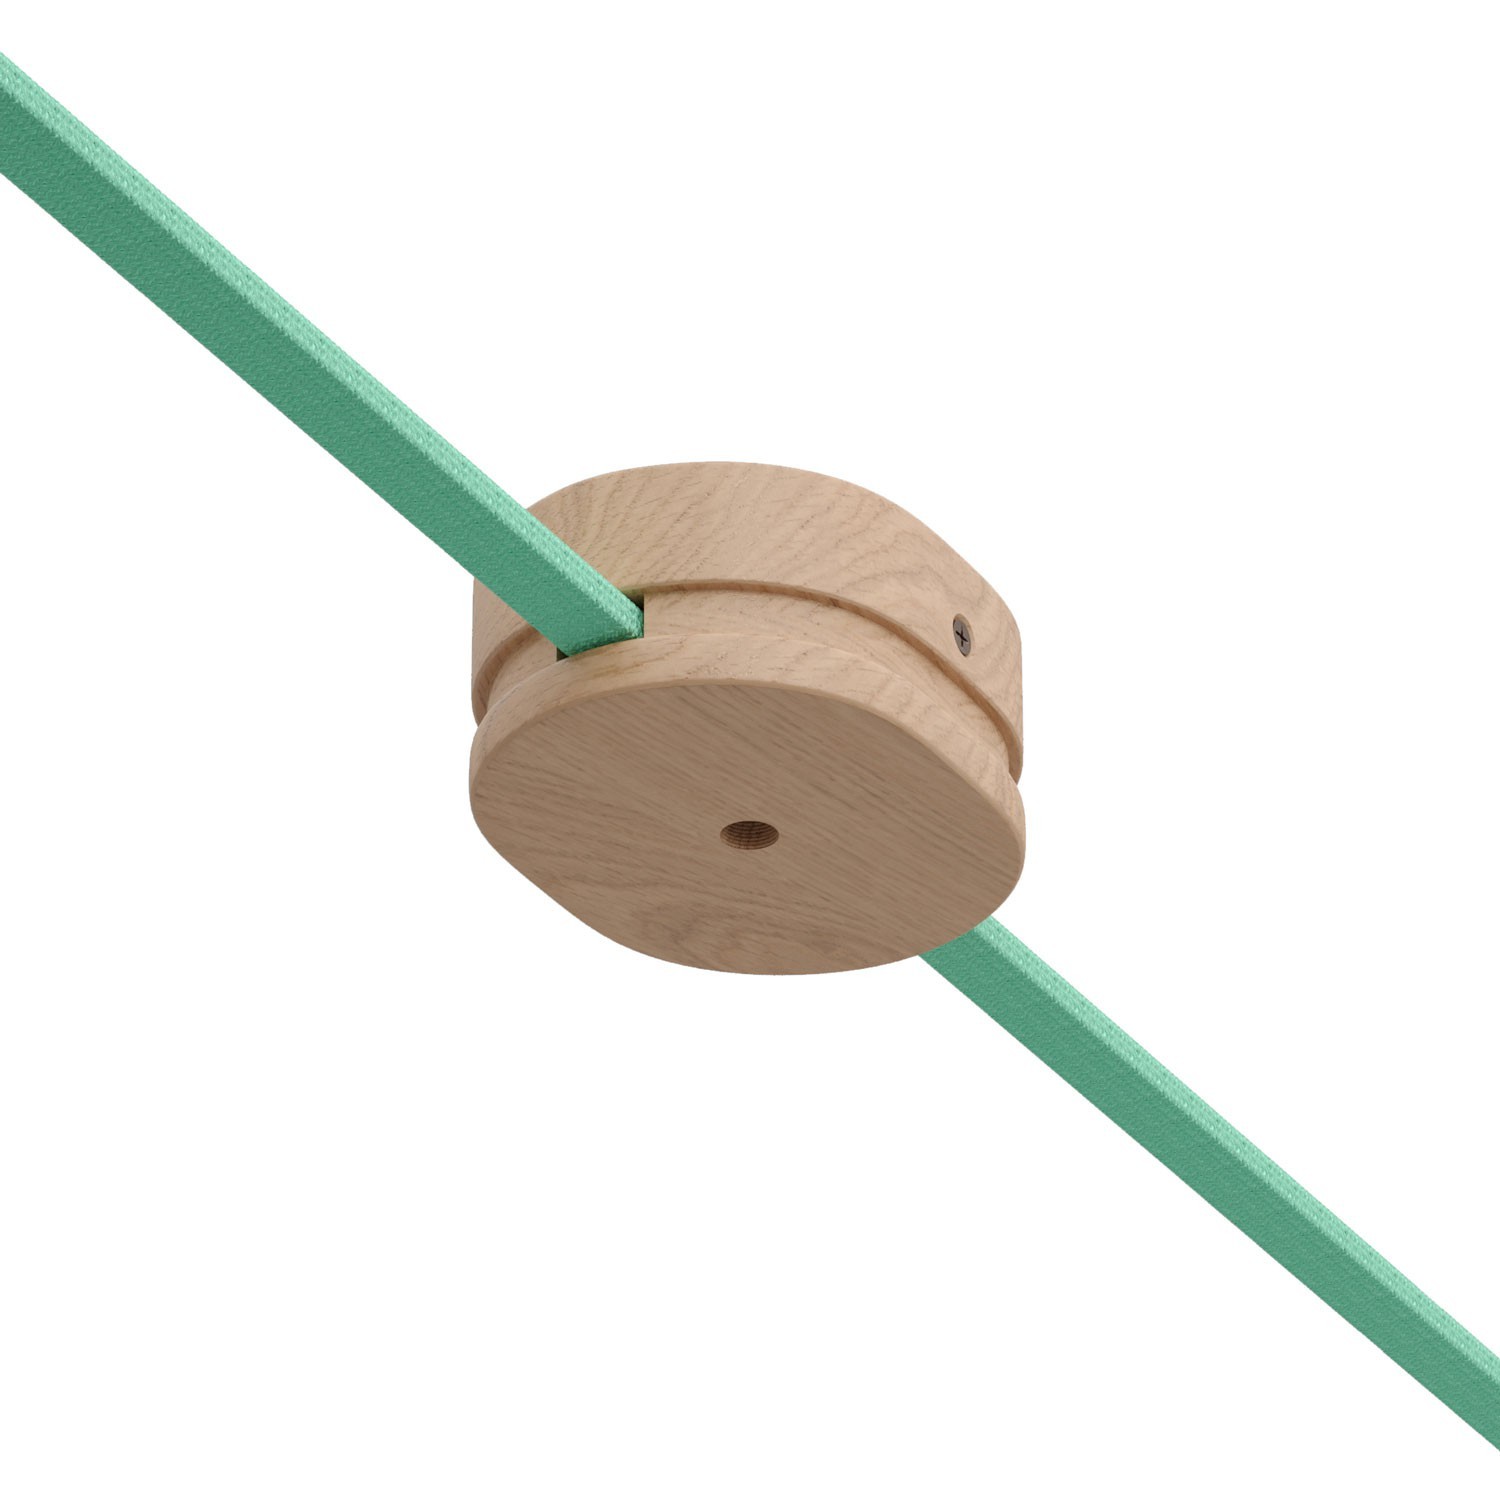 Lesena ovalna rozeta za Filé sistem z enim sredinskim izpustom in dvema stranskima odprtinama za kabel. Proizvedeno v Italiji